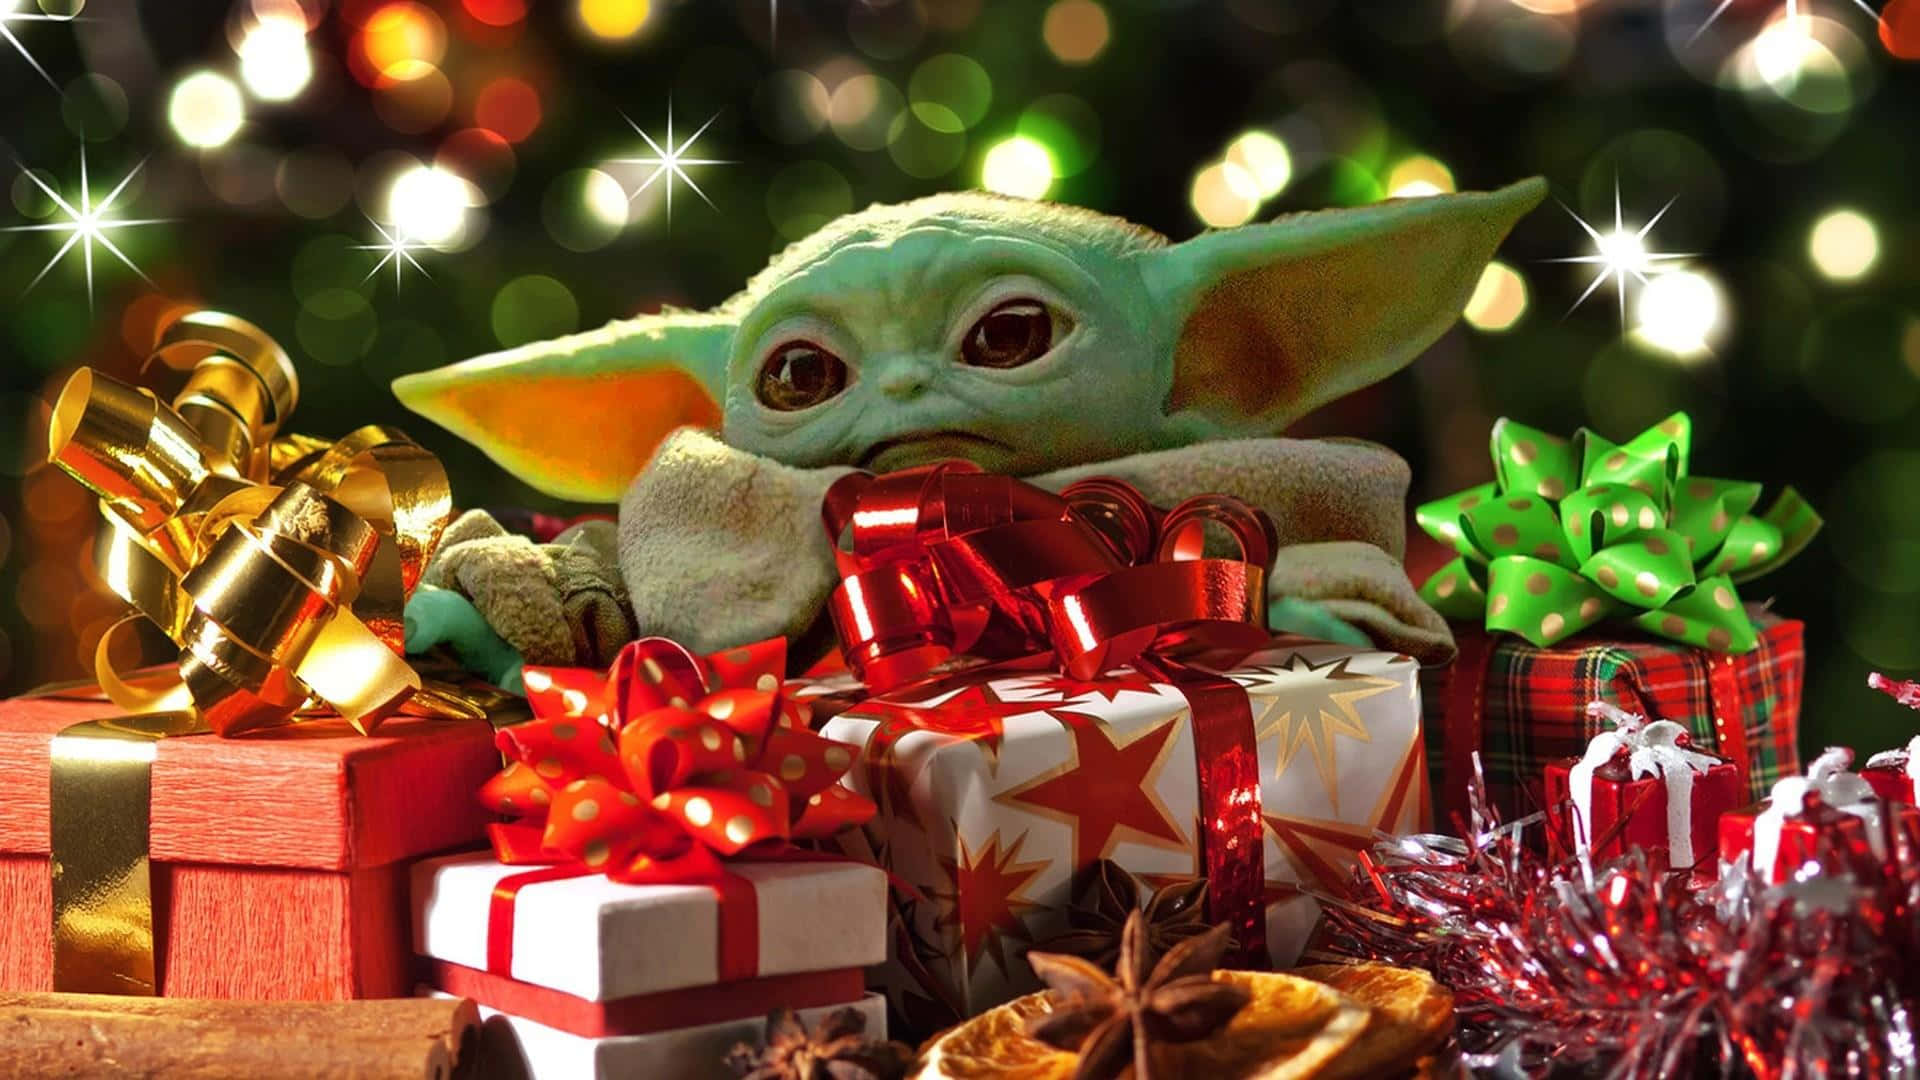 Feiernsie Dieses Weihnachten Mit Baby Yoda Wallpaper